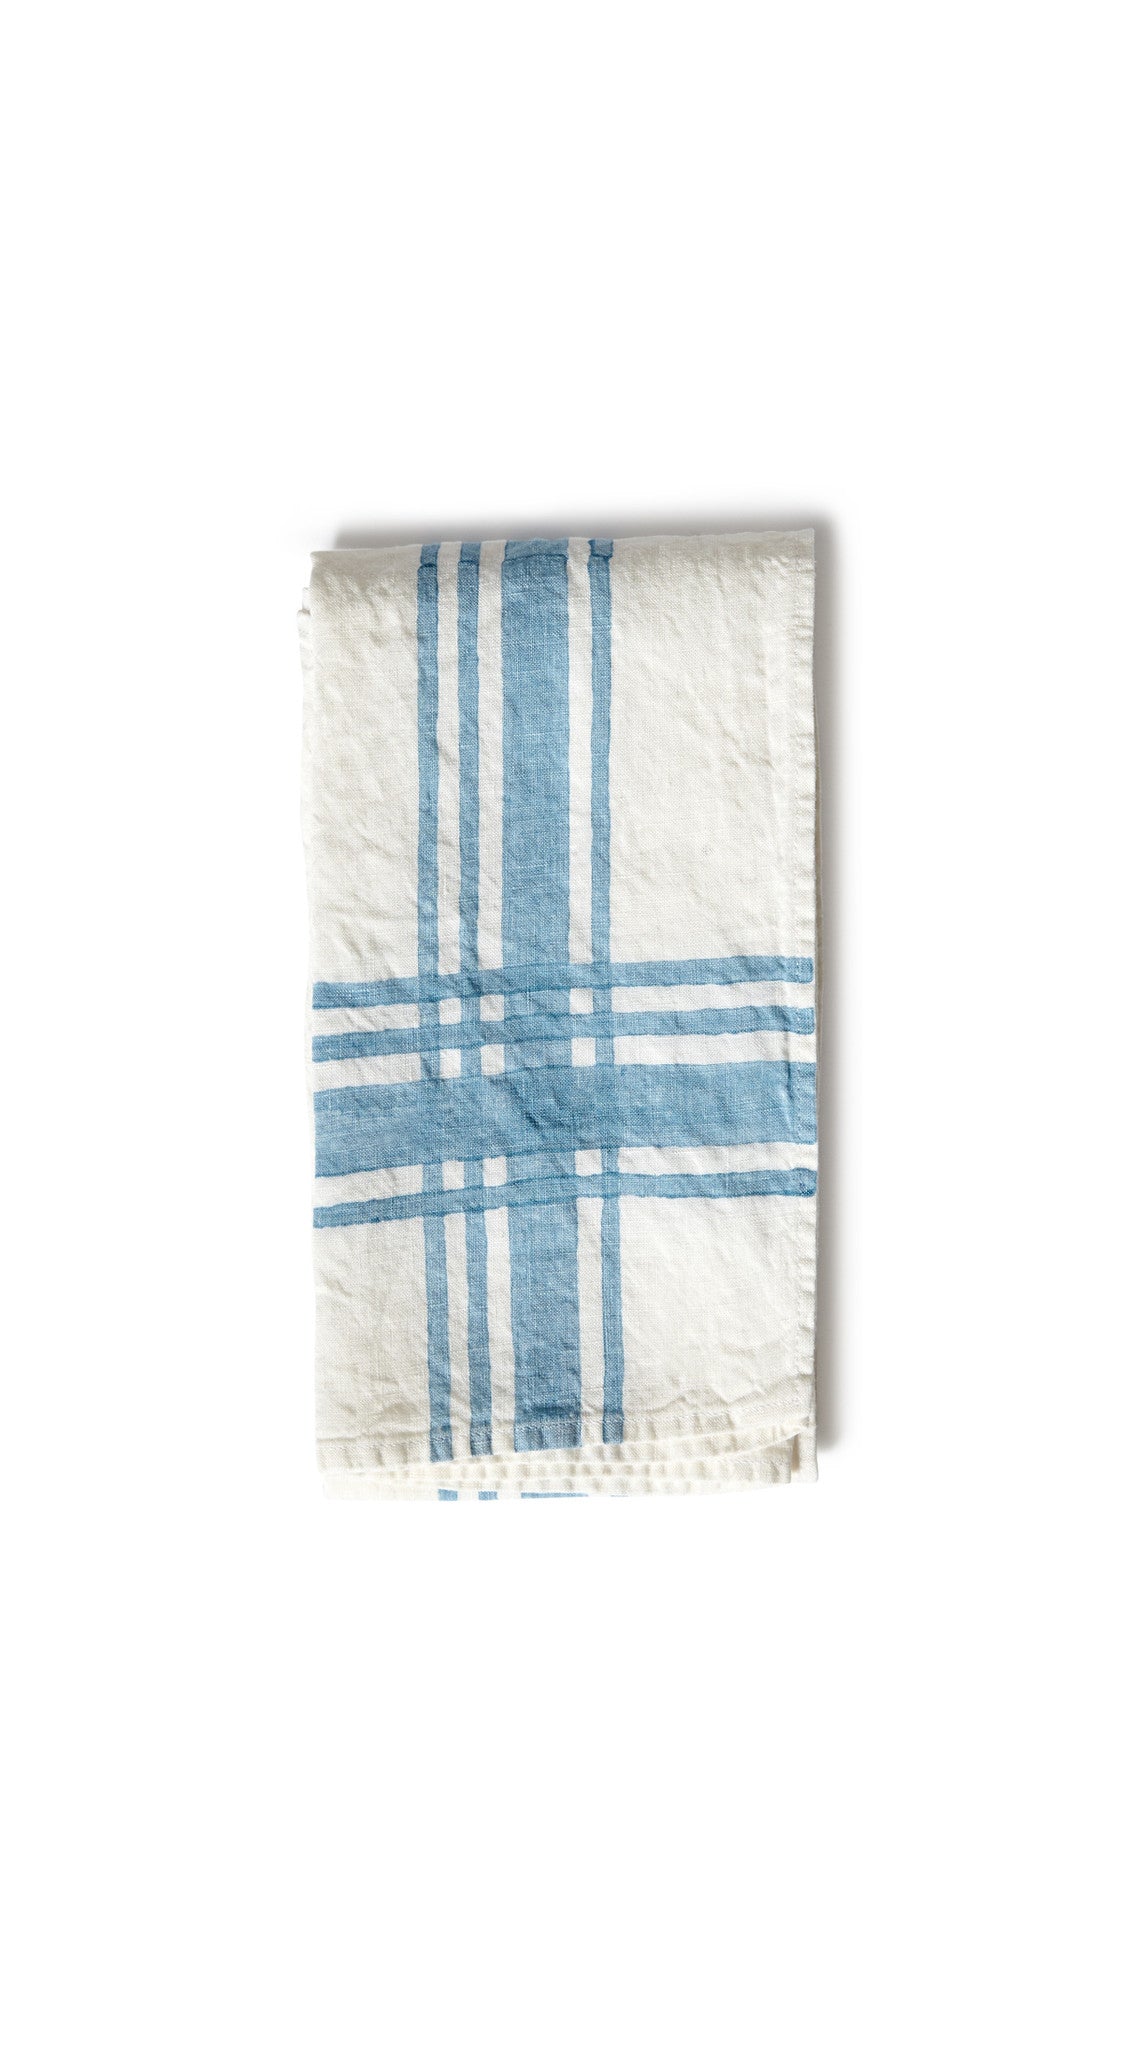 Stripe Linen Tea Towel in Sky Blue, 55x70cm